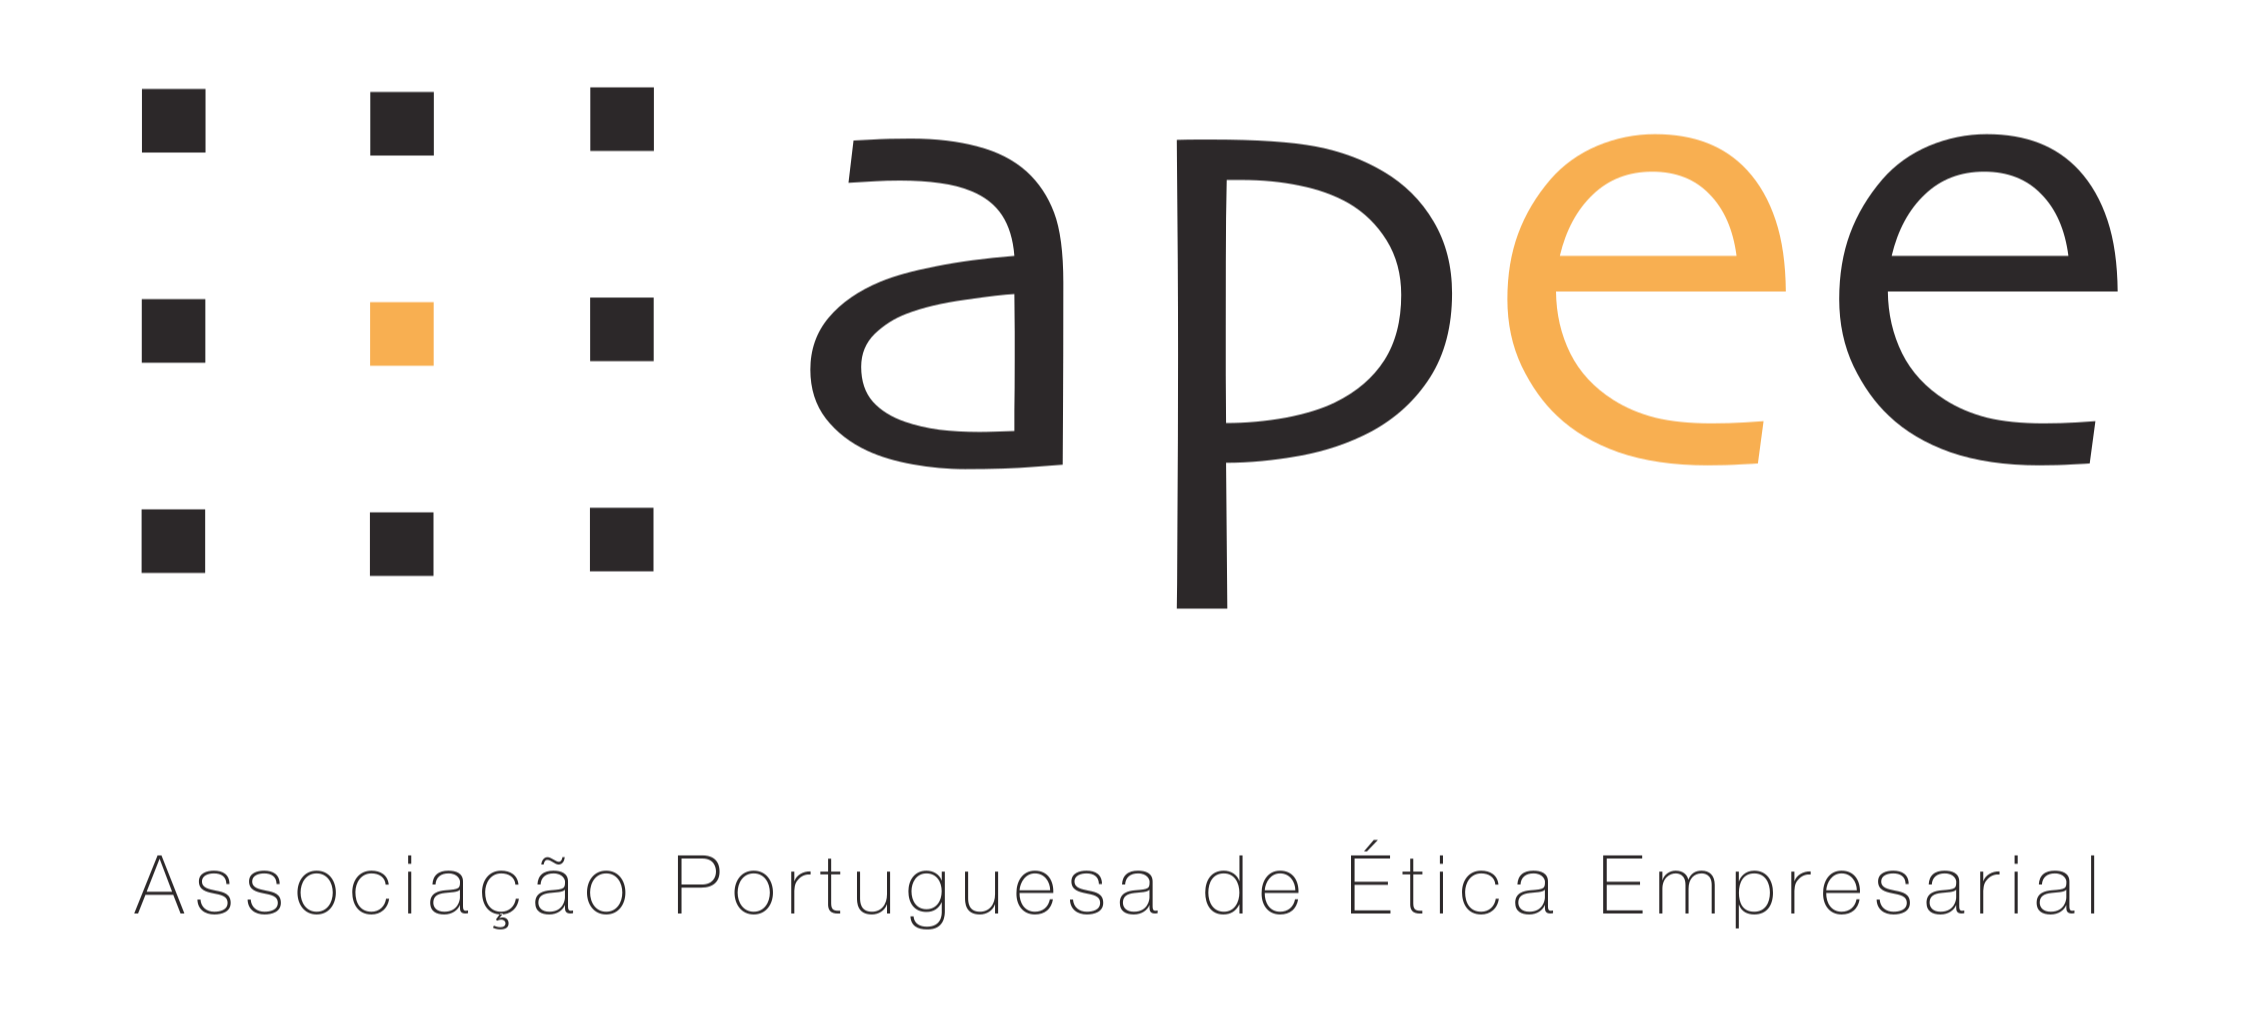 APEE - Associação Portuguesa de Ética Empresarial